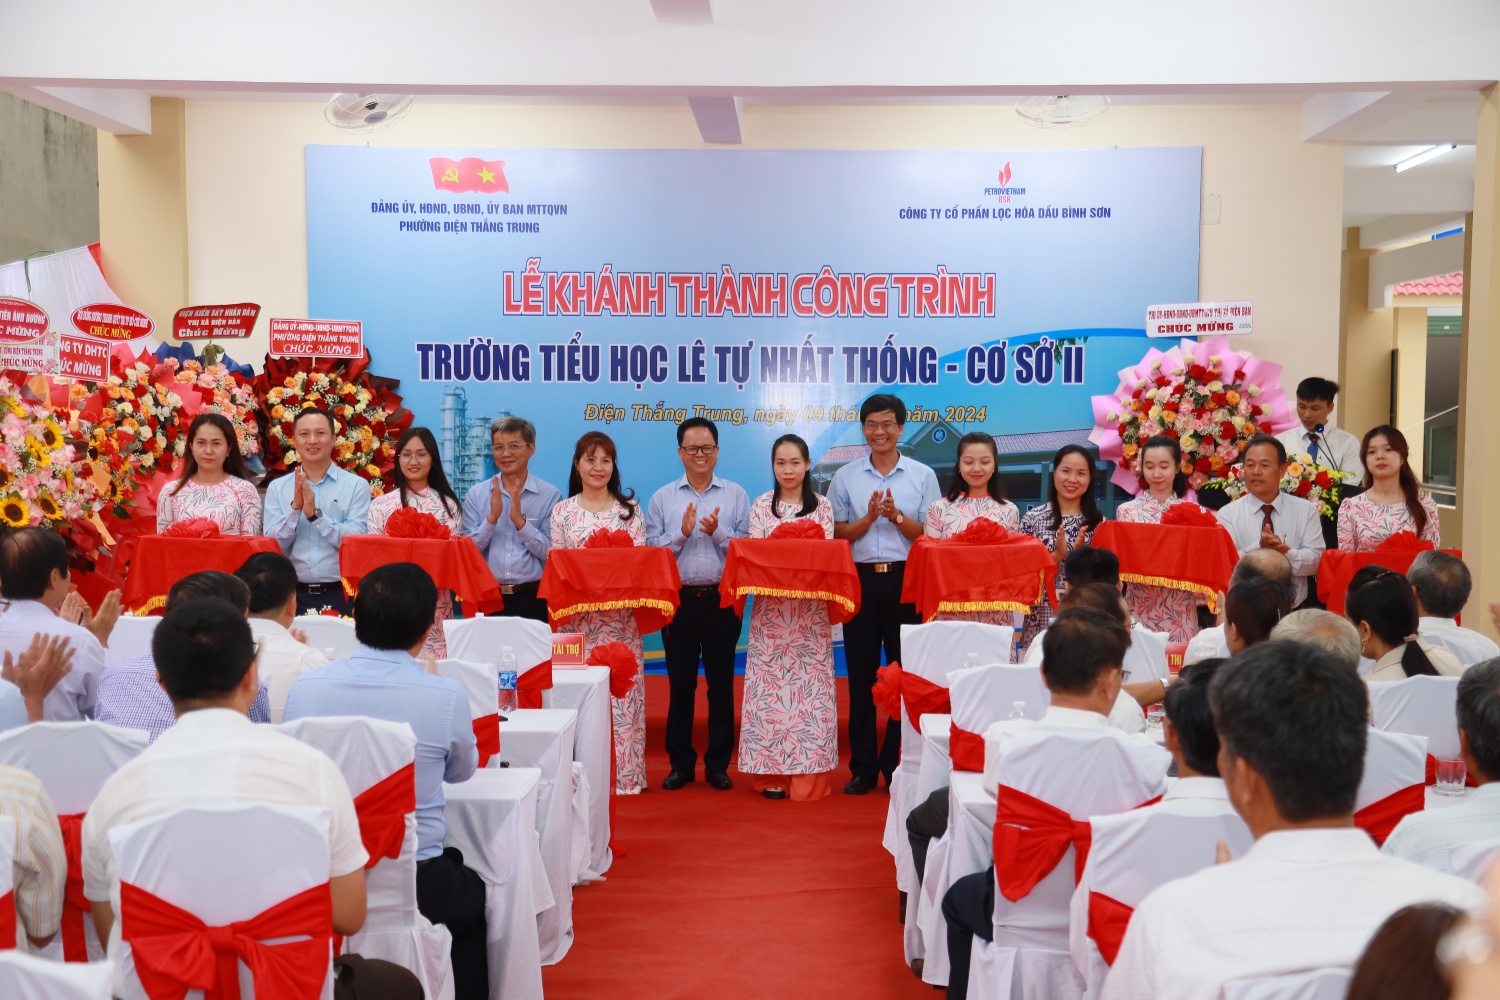 BSR tài trợ 5 tỷ đồng xây dựng trường tiểu học tại tỉnh Quảng Nam”